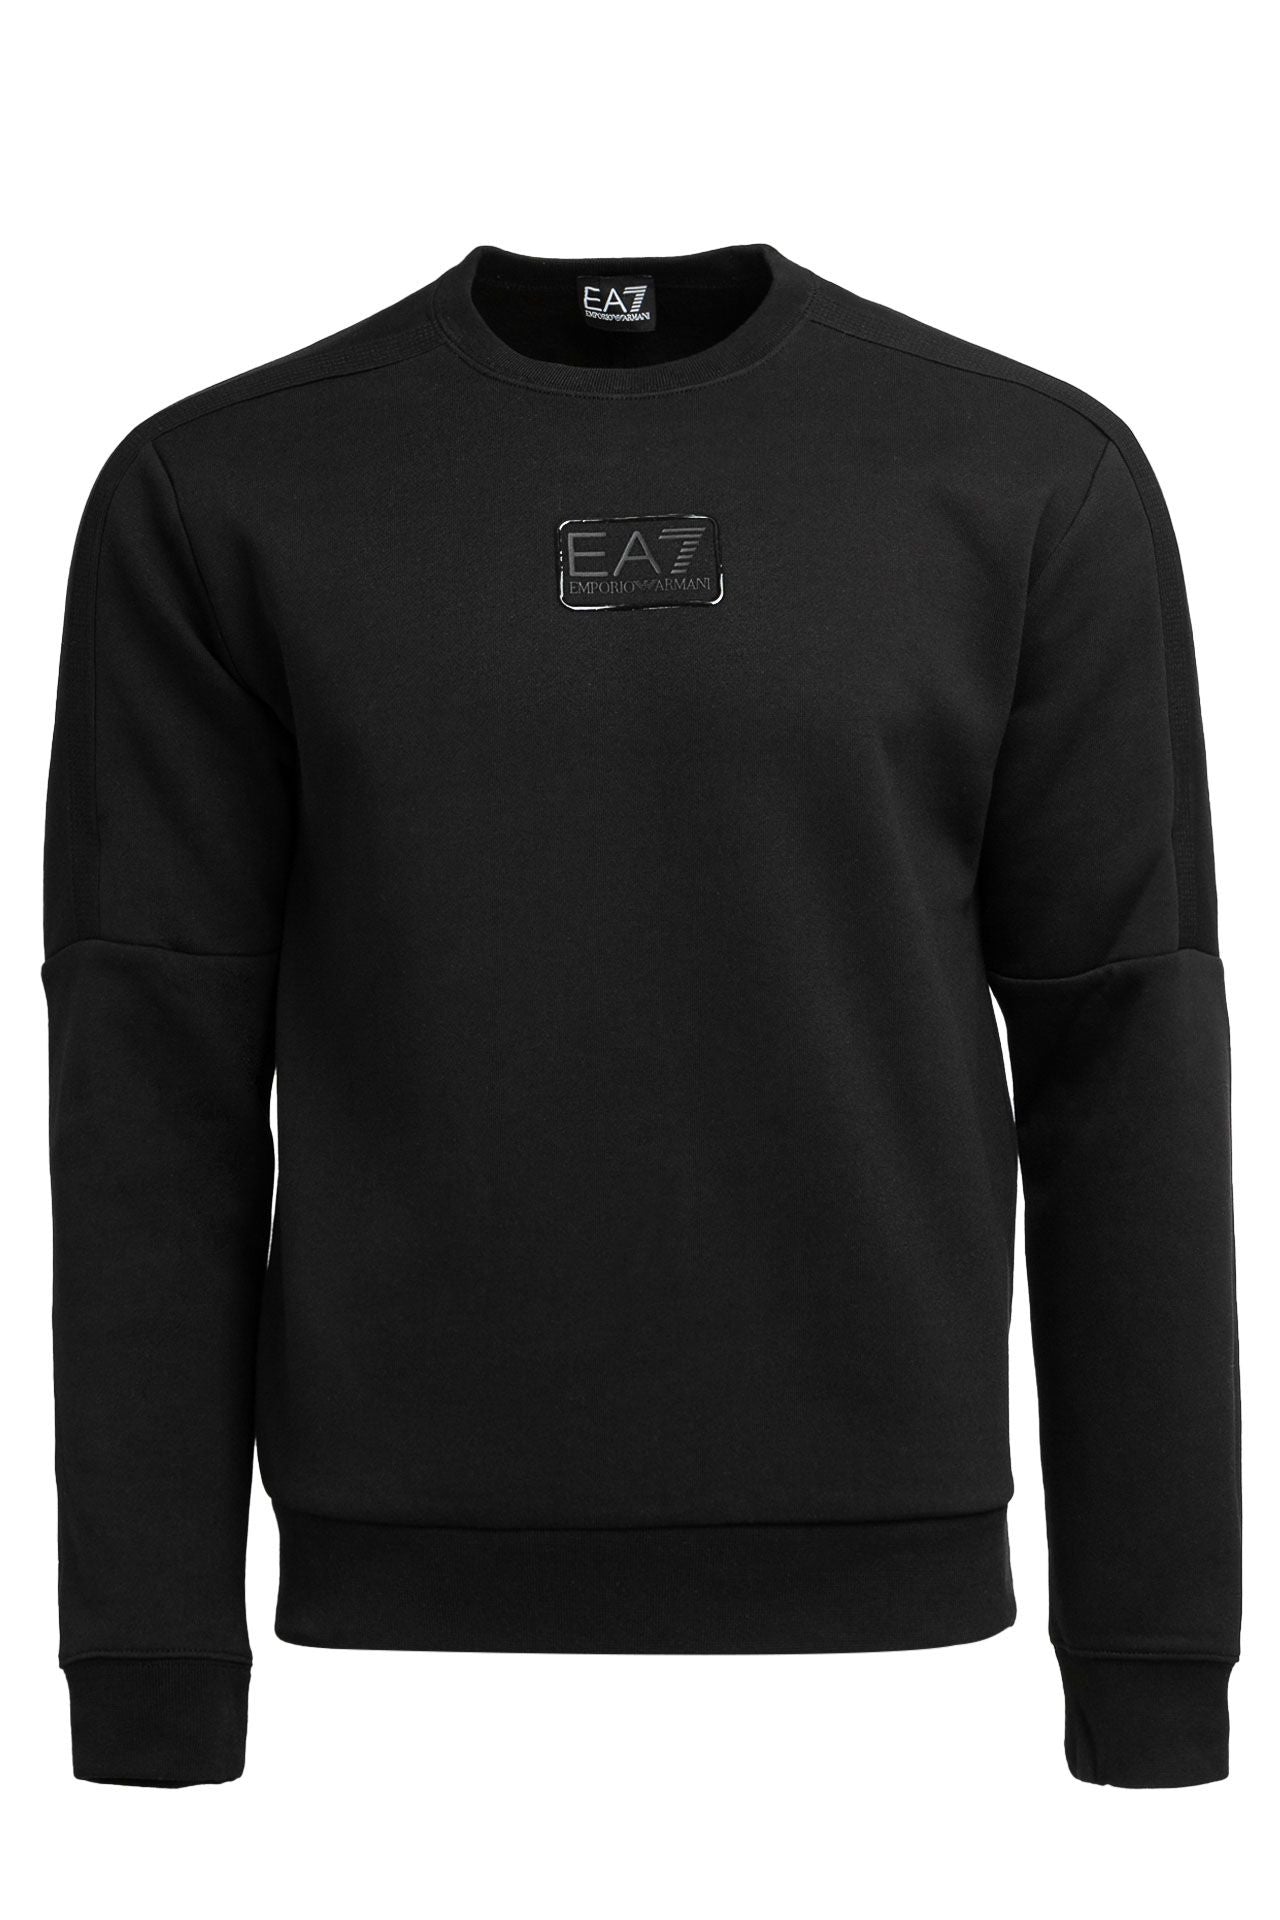 Bluza barbati EA7 - negru